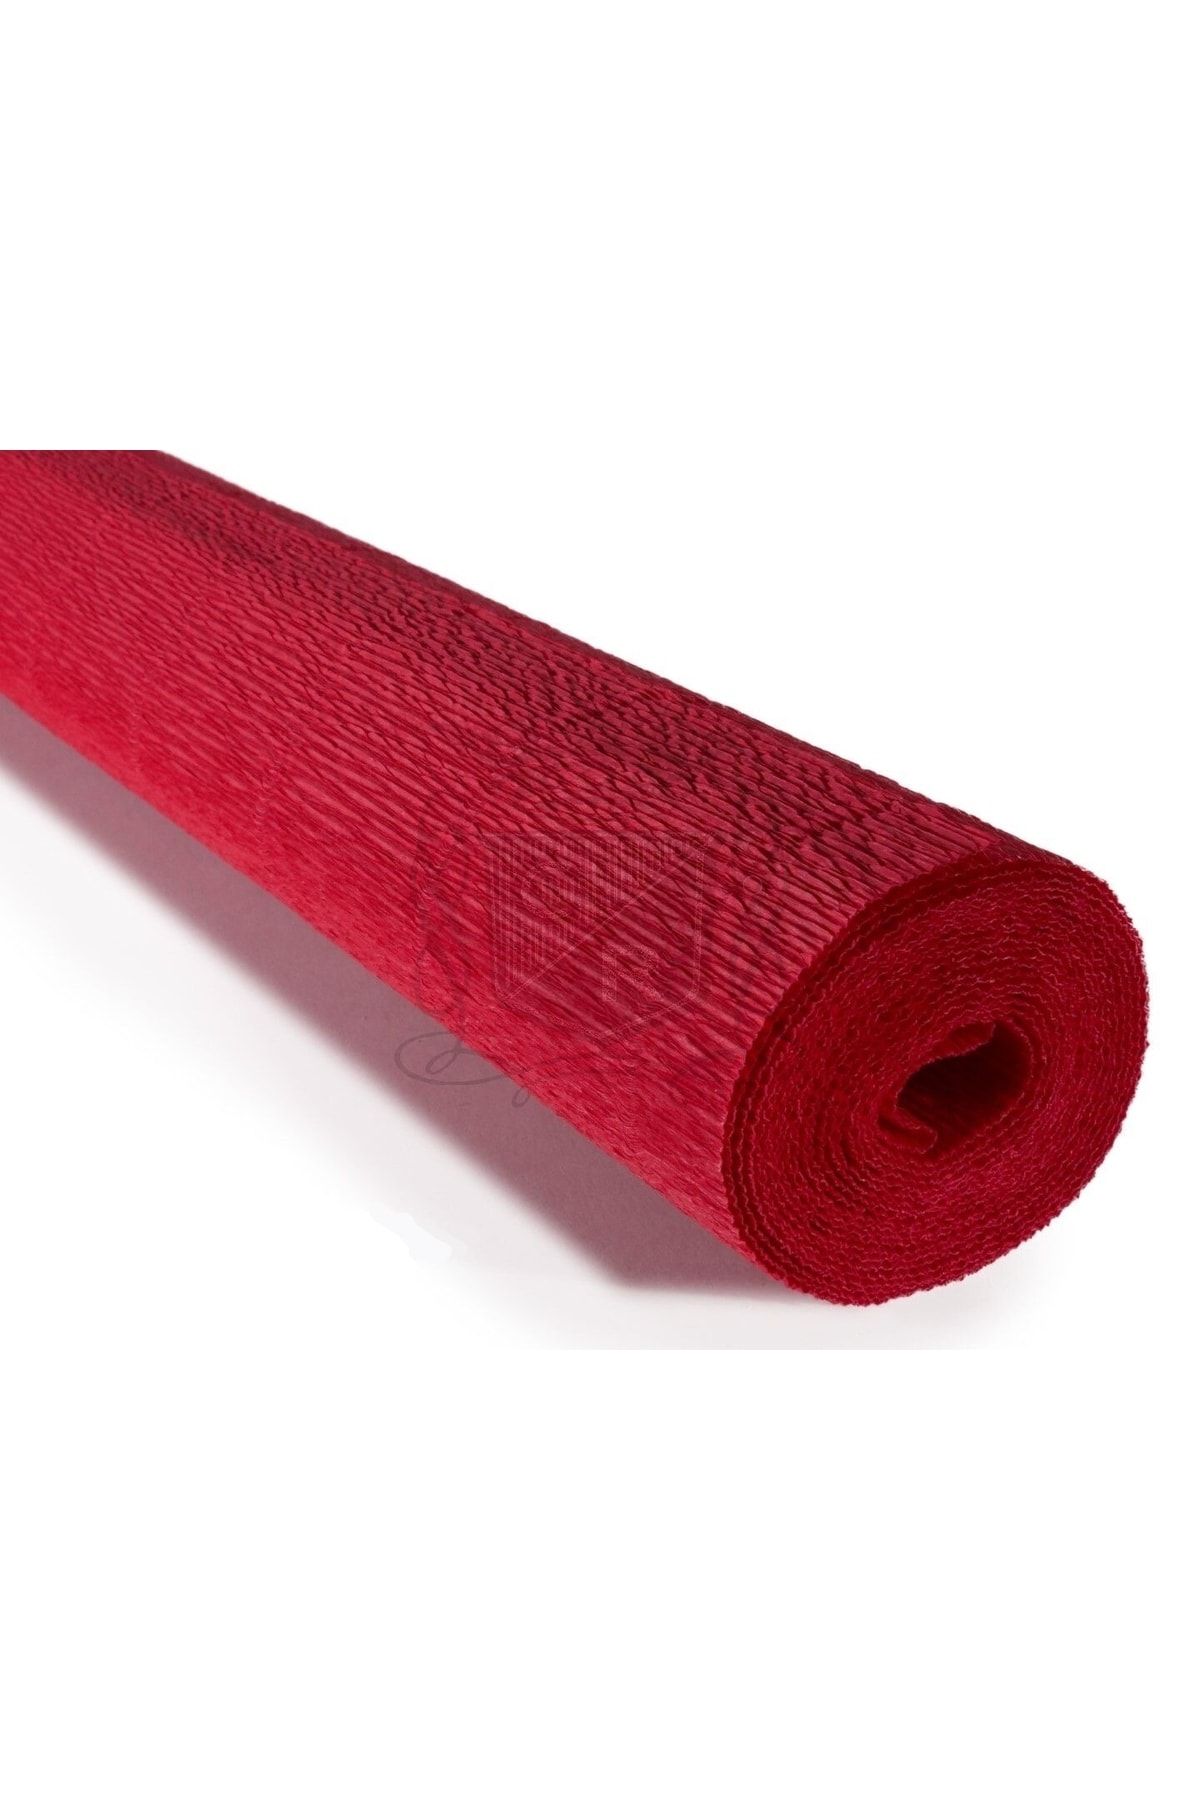 roco paper Italyan Krapon Kağıdı No:589 - Kırmızı - Scarlet Red 180 gr 50x250 Cm